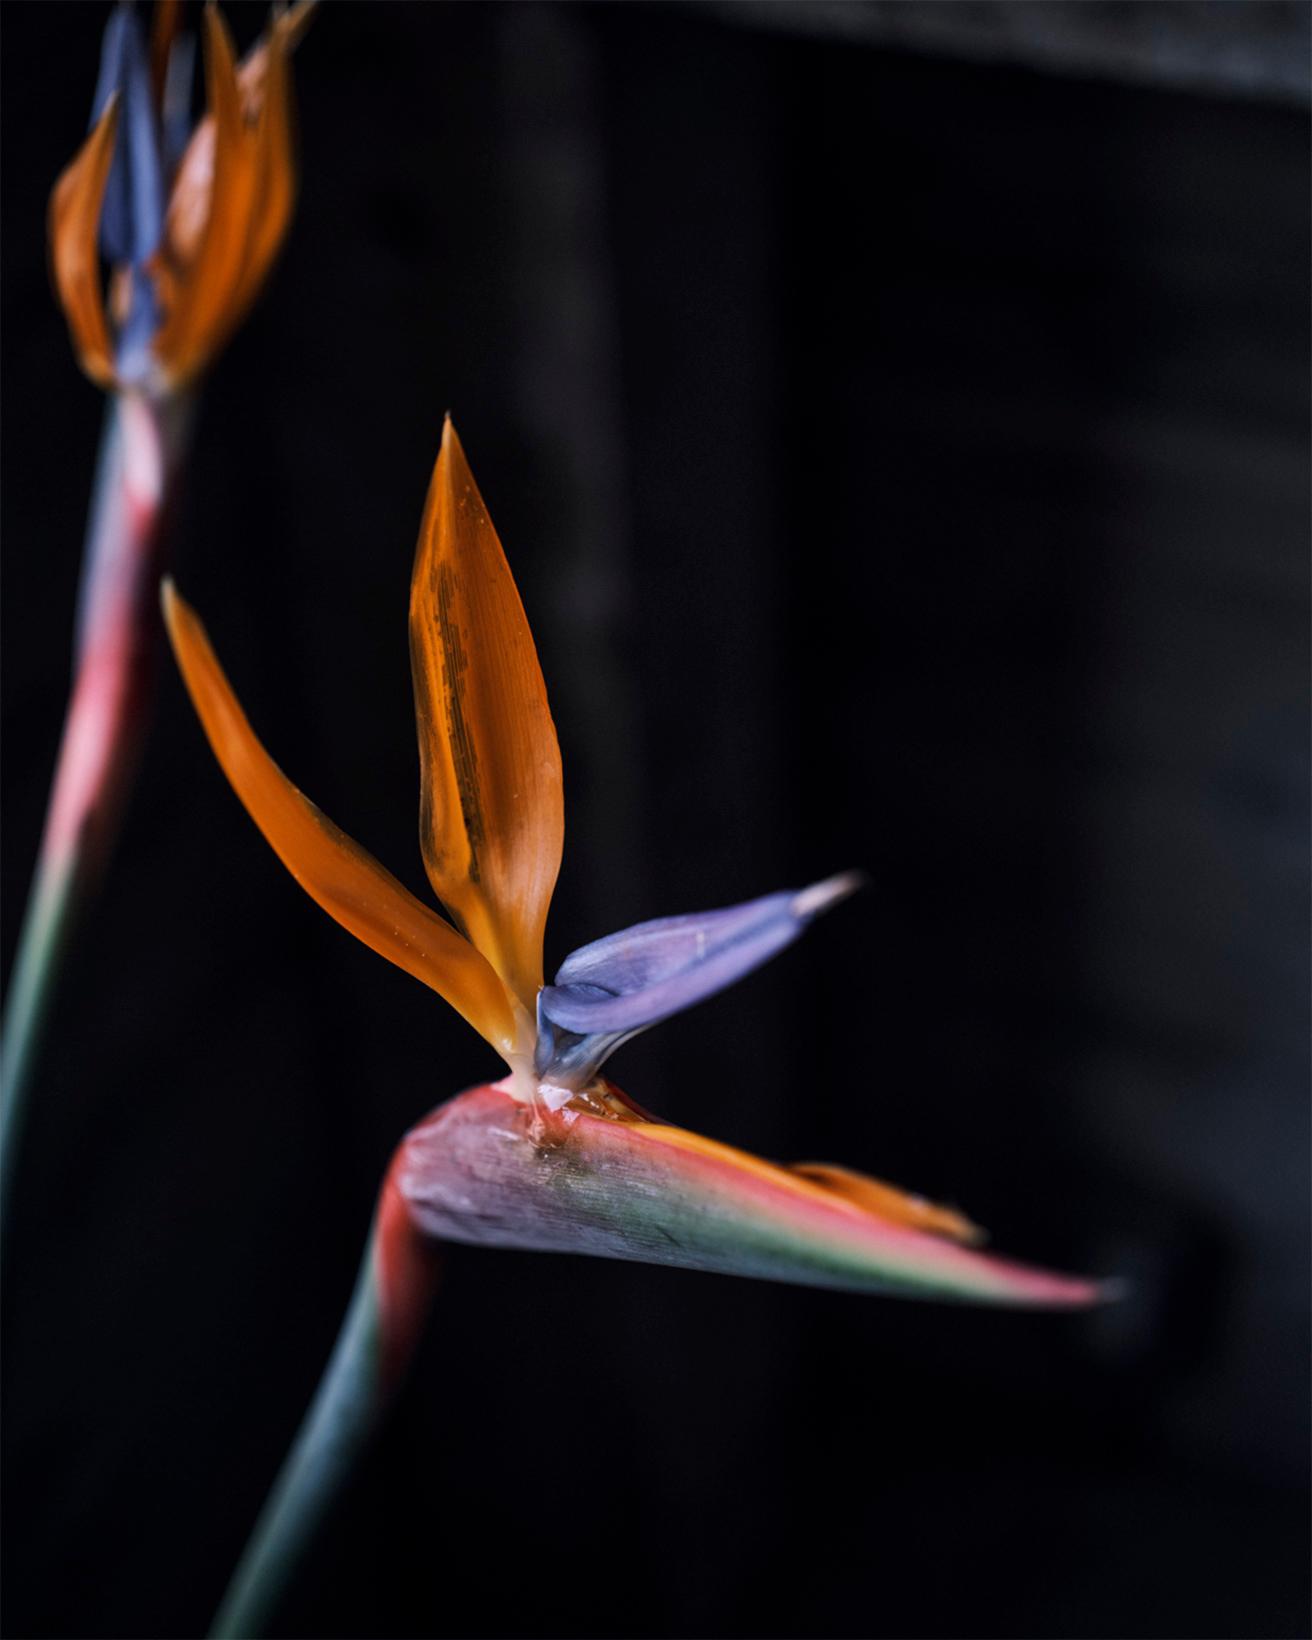 極楽鳥花、別名、ストレリチアは南アフリカ原産。カラフルな花びらが、パプアニューギニアに生息する極楽鳥（正式にはフウチョウ科）の飾り羽に似ている。